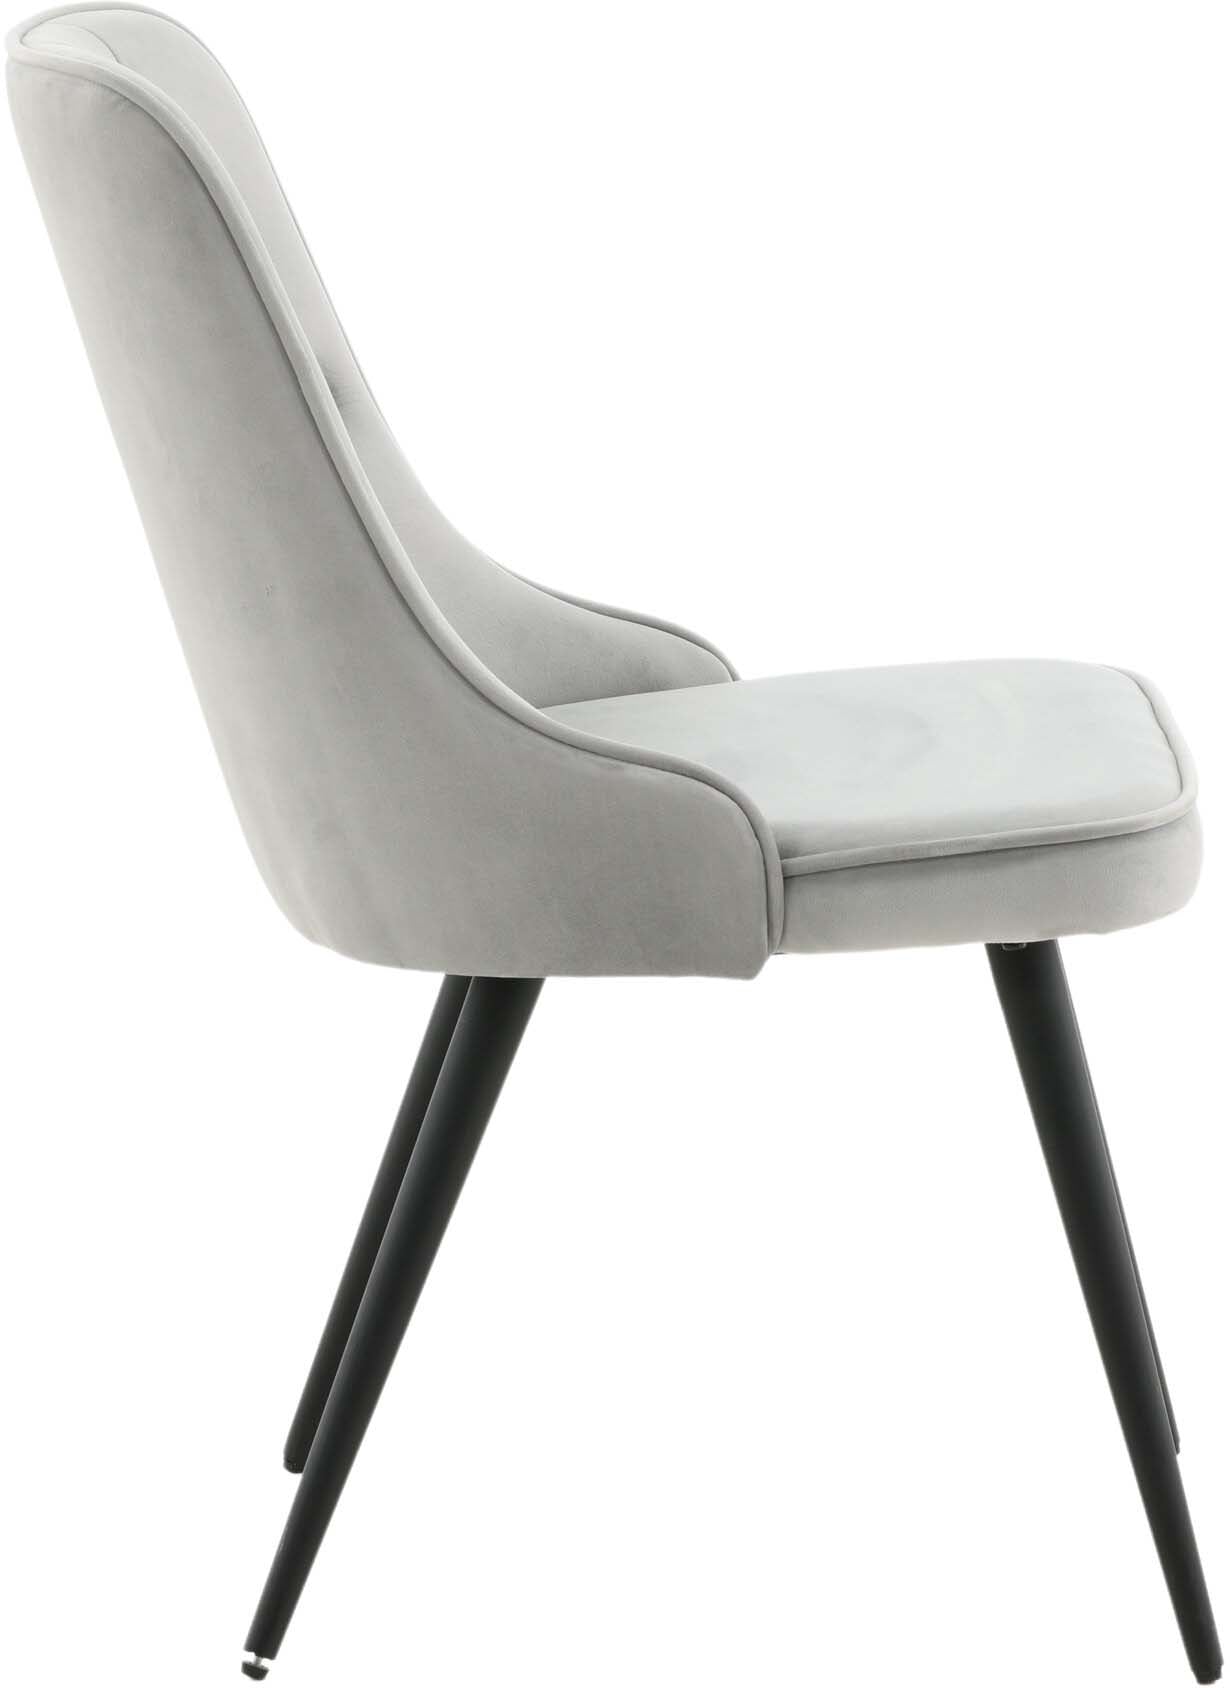 Velvet Deluxe Stuhl in Hellgrau / Schwarz präsentiert im Onlineshop von KAQTU Design AG. Stuhl ist von Venture Home